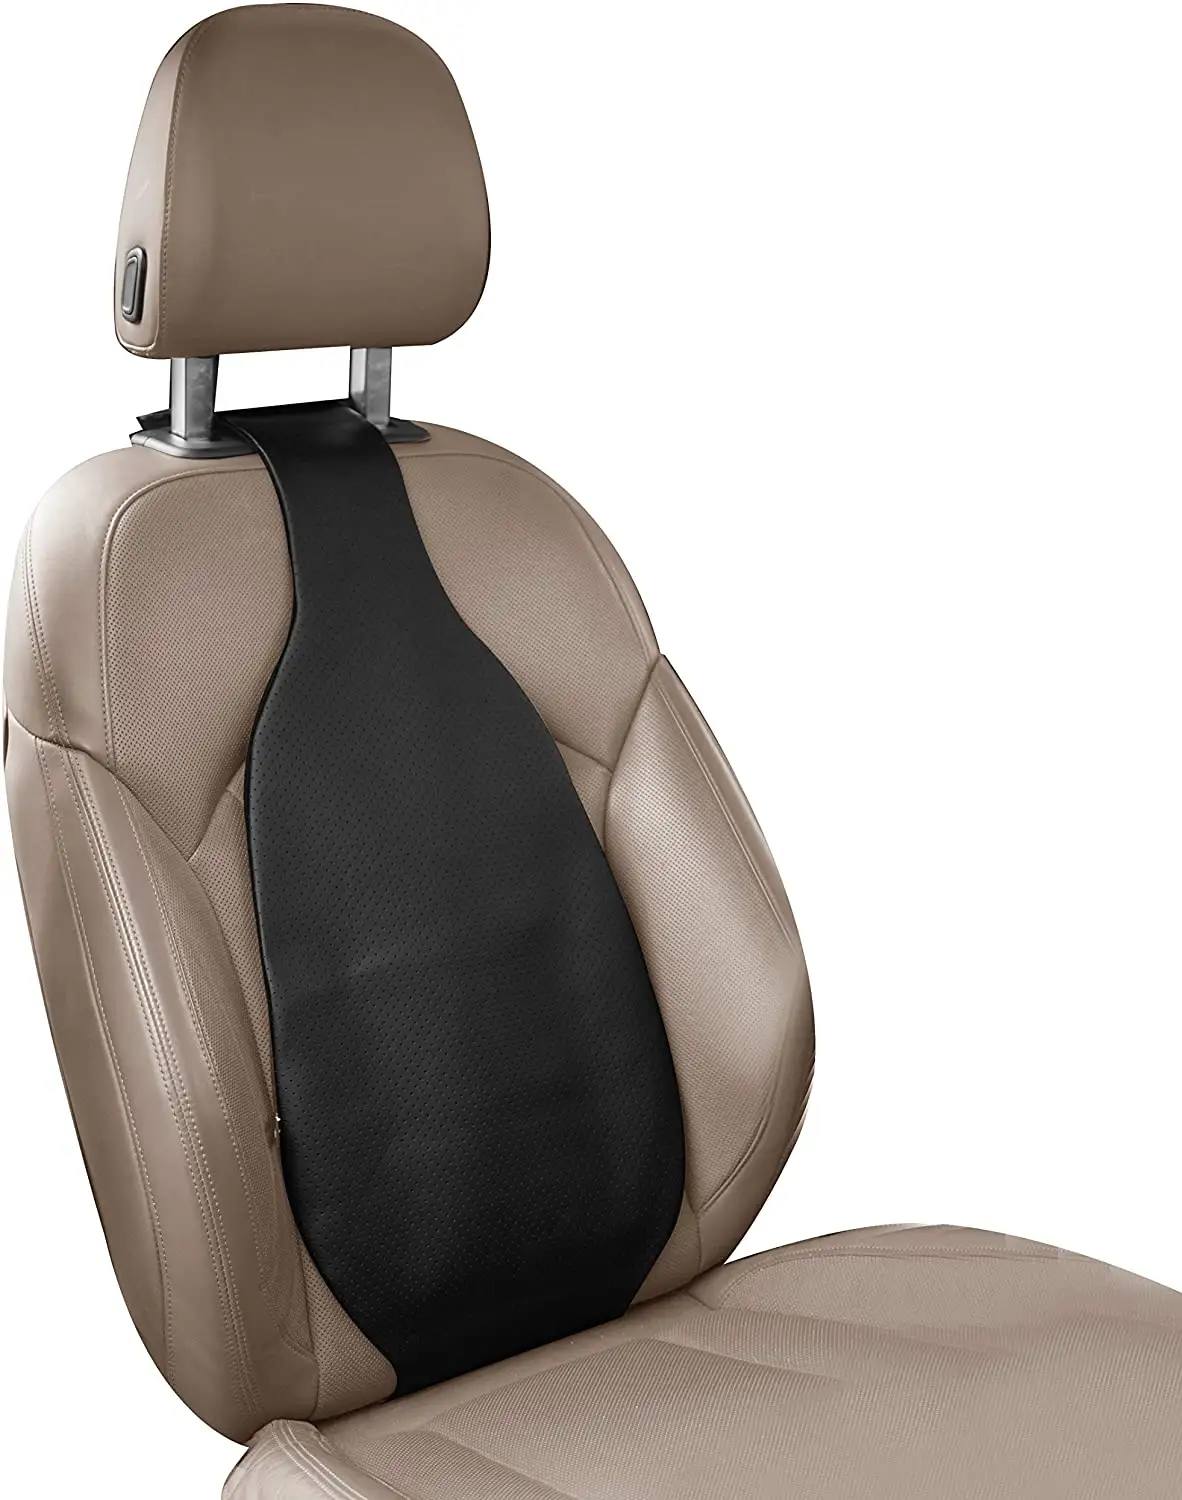 車用ランバーサポートバッククッション-腰痛用エアモーションバックレスト-整形外科用カスタマイズ姿勢サポートシートカバー